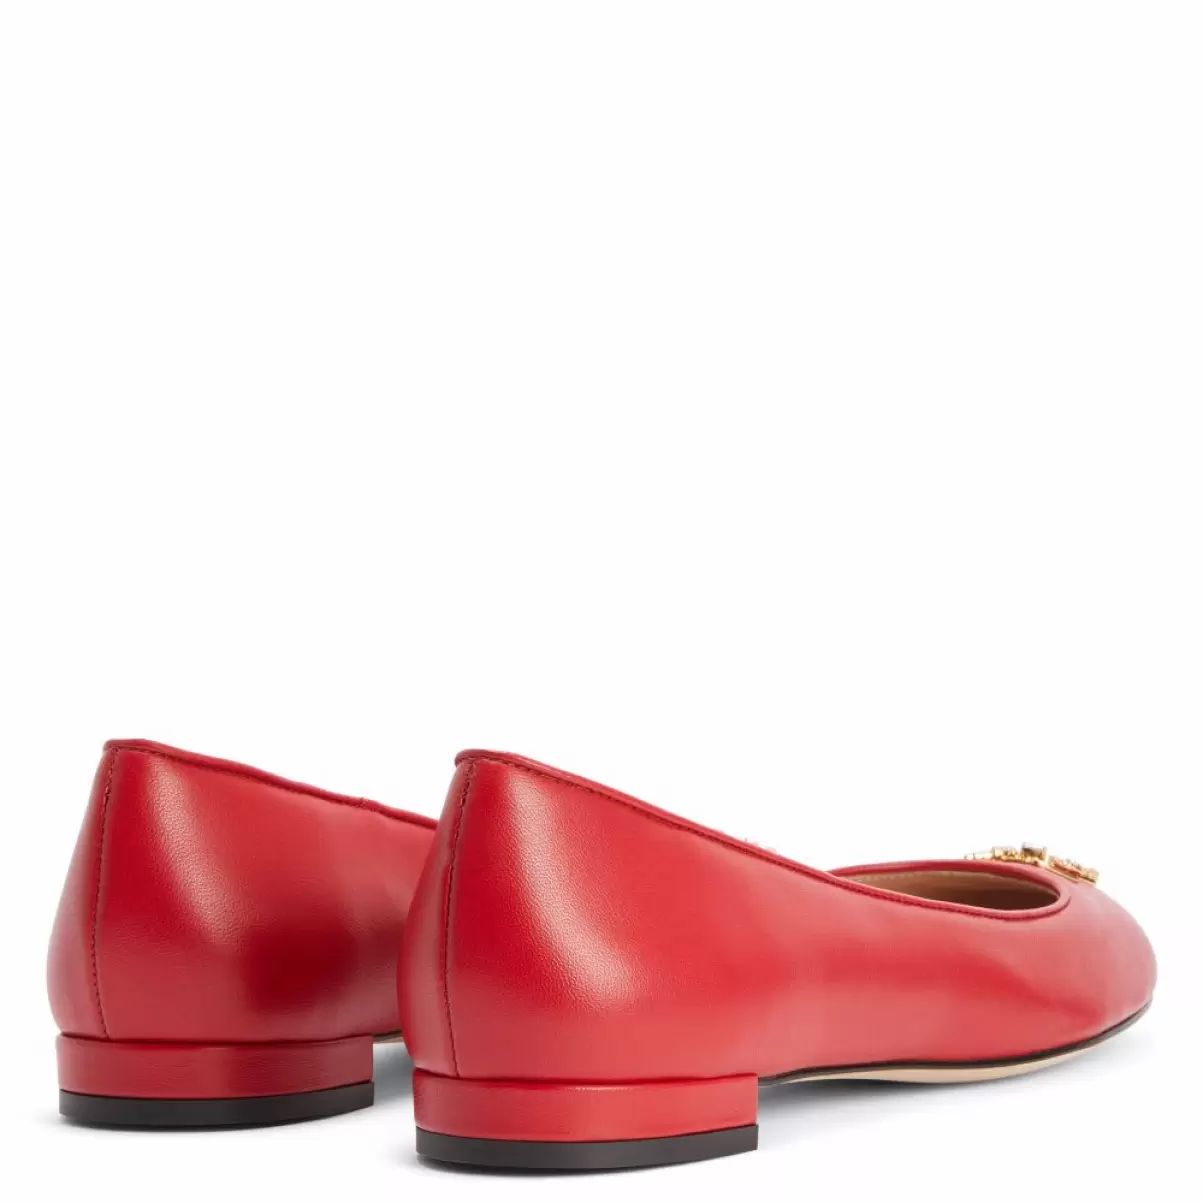 Riziana Mujer Zapatos Planos Giuseppe Zanotti Rojo - 3